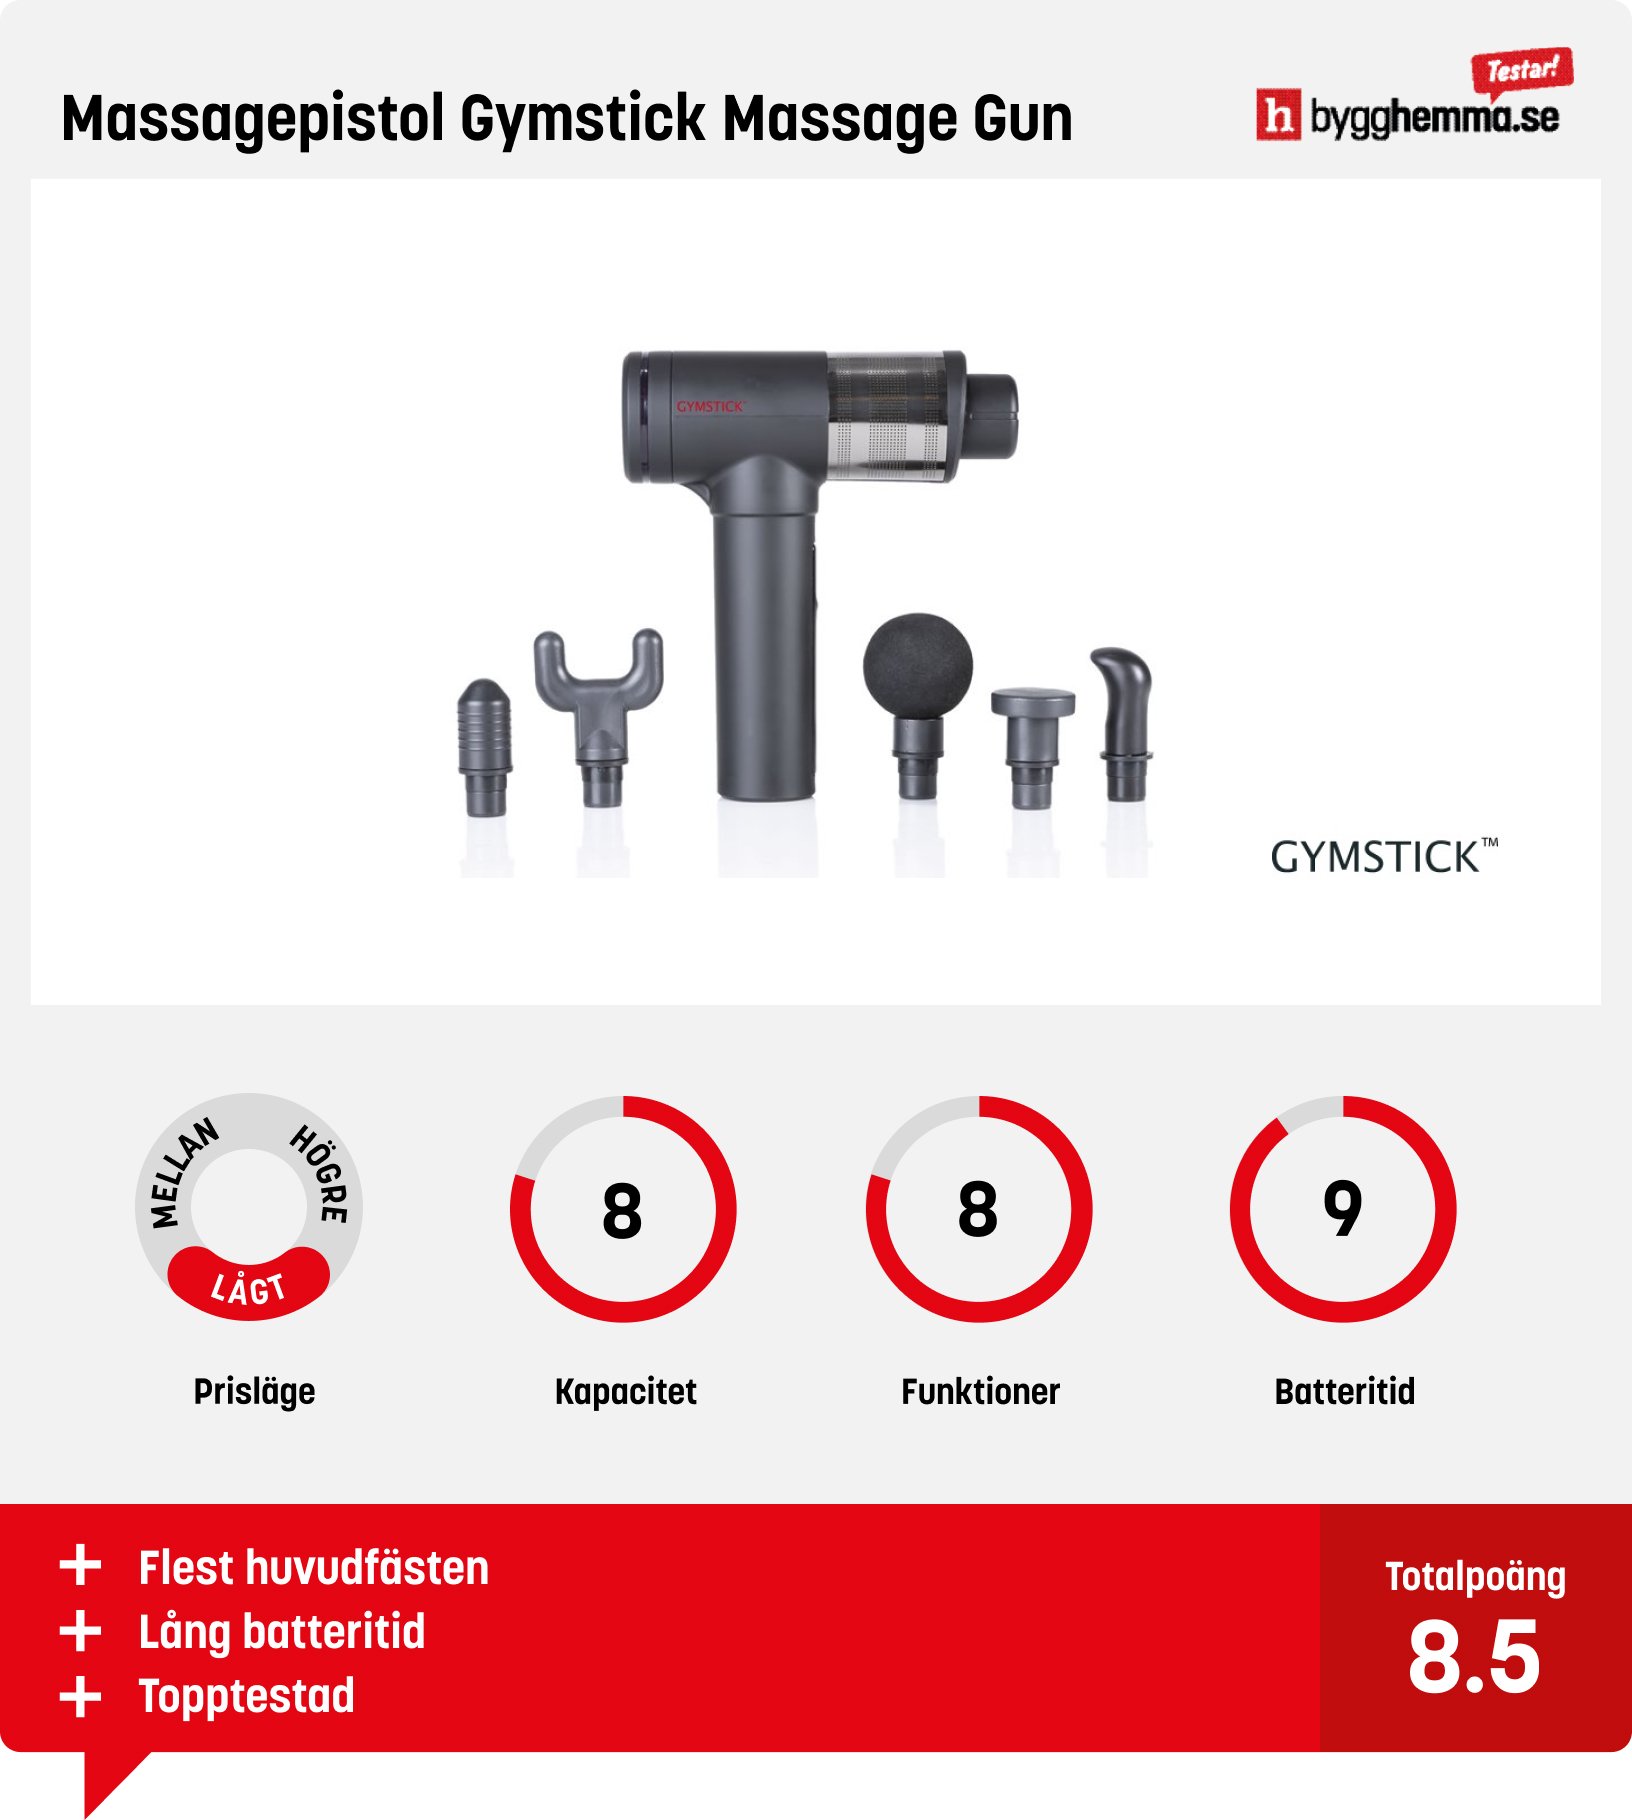 Massagepistol bäst i test - Massagepistol Gymstick Massage Gun